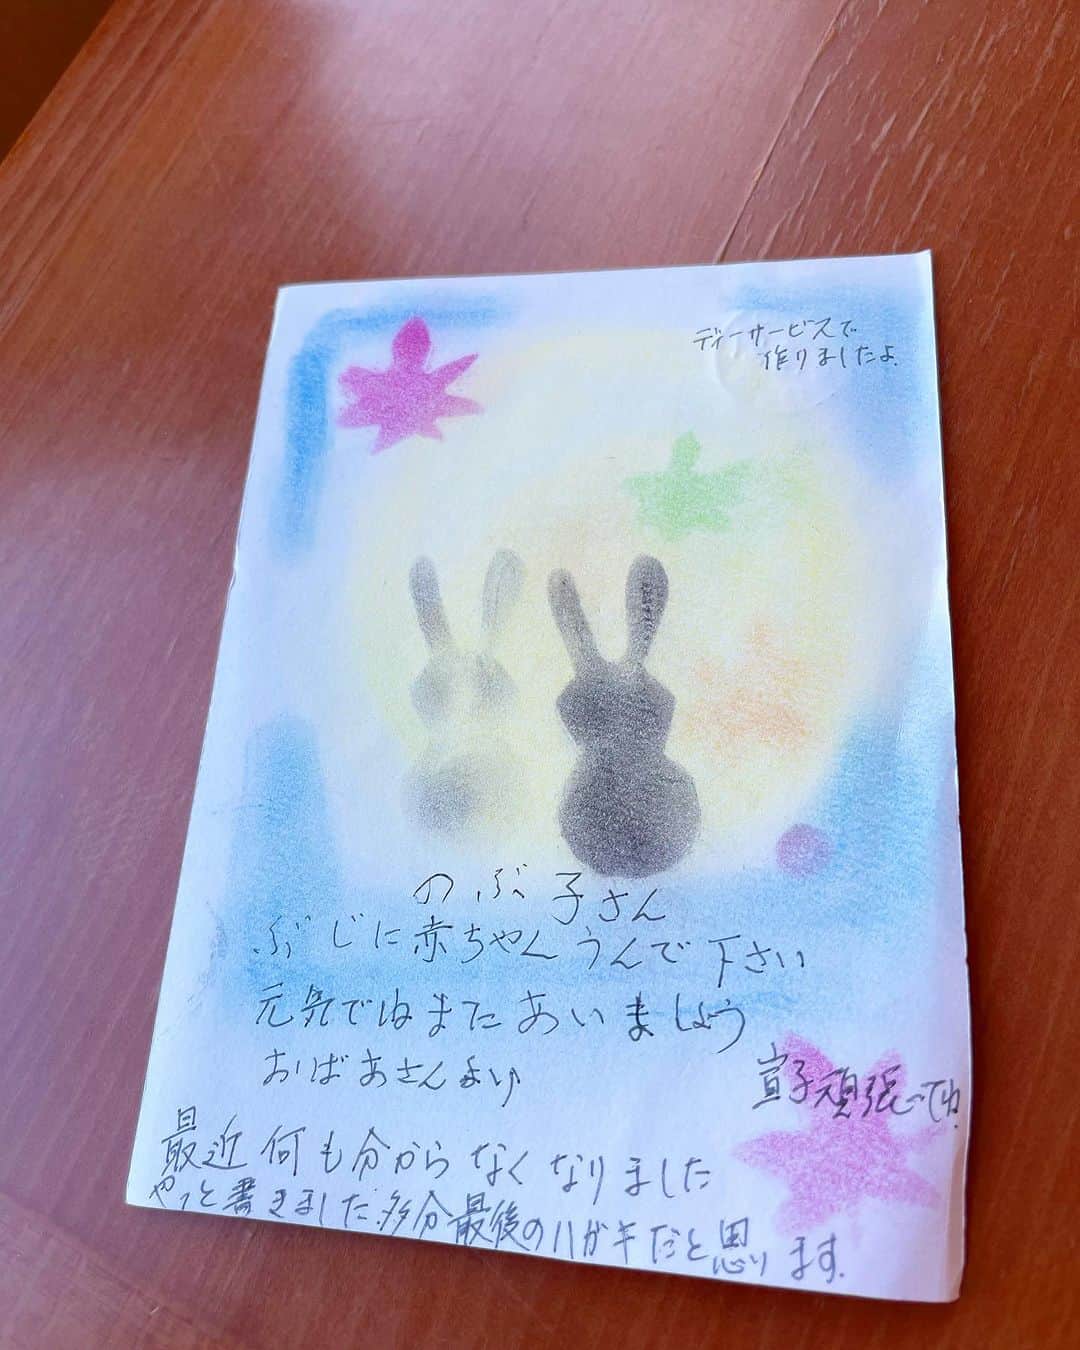 宮崎宣子さんのインスタグラム写真 - (宮崎宣子Instagram)「97歳の祖母から葉書が届きました。 母と一緒に書いてくれたこの祖母からの葉書と友人からの安産のお守りを持って入院しました。  祖母の介護もあり、母の負担を考えると少し落ちついてから宮崎に帰省できたらと思います。  体調も少しずつ回復してきているので、 皆さんからの質問に少しだけ答えられたらと思います。  まずは帝王切開の経験についての質問ですが、 私個人の感想と経験です。  まずは手術室に運ばれて、 色んな先生方がご挨拶にきてくれました。  全身麻酔しか経験してこなかったので、 下半身麻酔が効いてきても、 手術室の異様な雰囲気と不安と恐怖で大泣きしてました。  もうすぐ赤ちゃんに会えるからねーと言われても、何とも言えない下半身の鈍い感覚と、シートが引かれて見えないようになっているため、 これから何がどうなるのか怖くて怖くて、 涙が止まりませんでした。  色々と引っ張られるような感覚が少しあってすぐに泣き声が聞こえました。  開腹してからは2.3分くらいです。  ホッとしたのか涙は止まらず、そこから後処理に入る時には眠る麻酔を入れてもらい、寝てしまいました。  ぼんやりとした感覚のまま部屋に戻ってきても、 下半身の鈍い感覚と眠気でしばらくは寝てました。  5時間くらいして、目が覚めて麻酔が切れ始めてからは激痛。 点滴の痛み止めと座薬で何とか耐えられる感じでした。 出産日当日は、一日中寝たまま動けませんでした。  2日目にトイレに行くように言われるのですが、 痛くて痛くて起き上がるのも、立ち上げるのも、歩くのも座るのも激痛でした。  腹筋を使わないフラットに横になっているのが一番痛みが少ないので、ずっと寝てました。  3日目から、点滴から飲み薬と座薬の痛み止めに変わりましたが、それでも痛くて少し歩けるようにはなりますが、くしゃみとか咳とかはしないように我慢してました。  4日目からは、痛みはあるもののかなり動けるようになりました。痛み止めさえあれば耐えられるくらいにはなり部屋の中で少しずつ歩き始めました。  リハビリが入って、今の痛み具合、痛みを軽減する動き方、回復に向けた腹筋を鍛える指導などがありました。寝たまま深い腹式呼吸をすることで、弱った腹筋を少しずつ元に戻していけるそうです。  術後の痛みでは、子宮が収縮しているかのチェックでお腹を押されるのが毎回痛くて、 さらに血栓予防の注射も地味に痛かったです🥲  私の場合、逆子、高齢、さらに赤ちゃんの頭が大きかったので頭位が下にきていても帝王切開だったねと院長先生から説明がありました。  帝王切開の術後は確かに痛みとの戦いですが、 少しずつですが日に日に回復はしていきました。  ただ、帝王切開の痛みしか考えていたなかった私には4日目から別の痛みが始まることを全く予想していなかったのです…  #帝王切開 #帝王切開術後  #怖さと不安 #手術後の痛み #痛み止めが手放せない  #回復は少しずつ #痛みが変わっていく #44歳出産」10月11日 7時43分 - miyazaki_nobuko